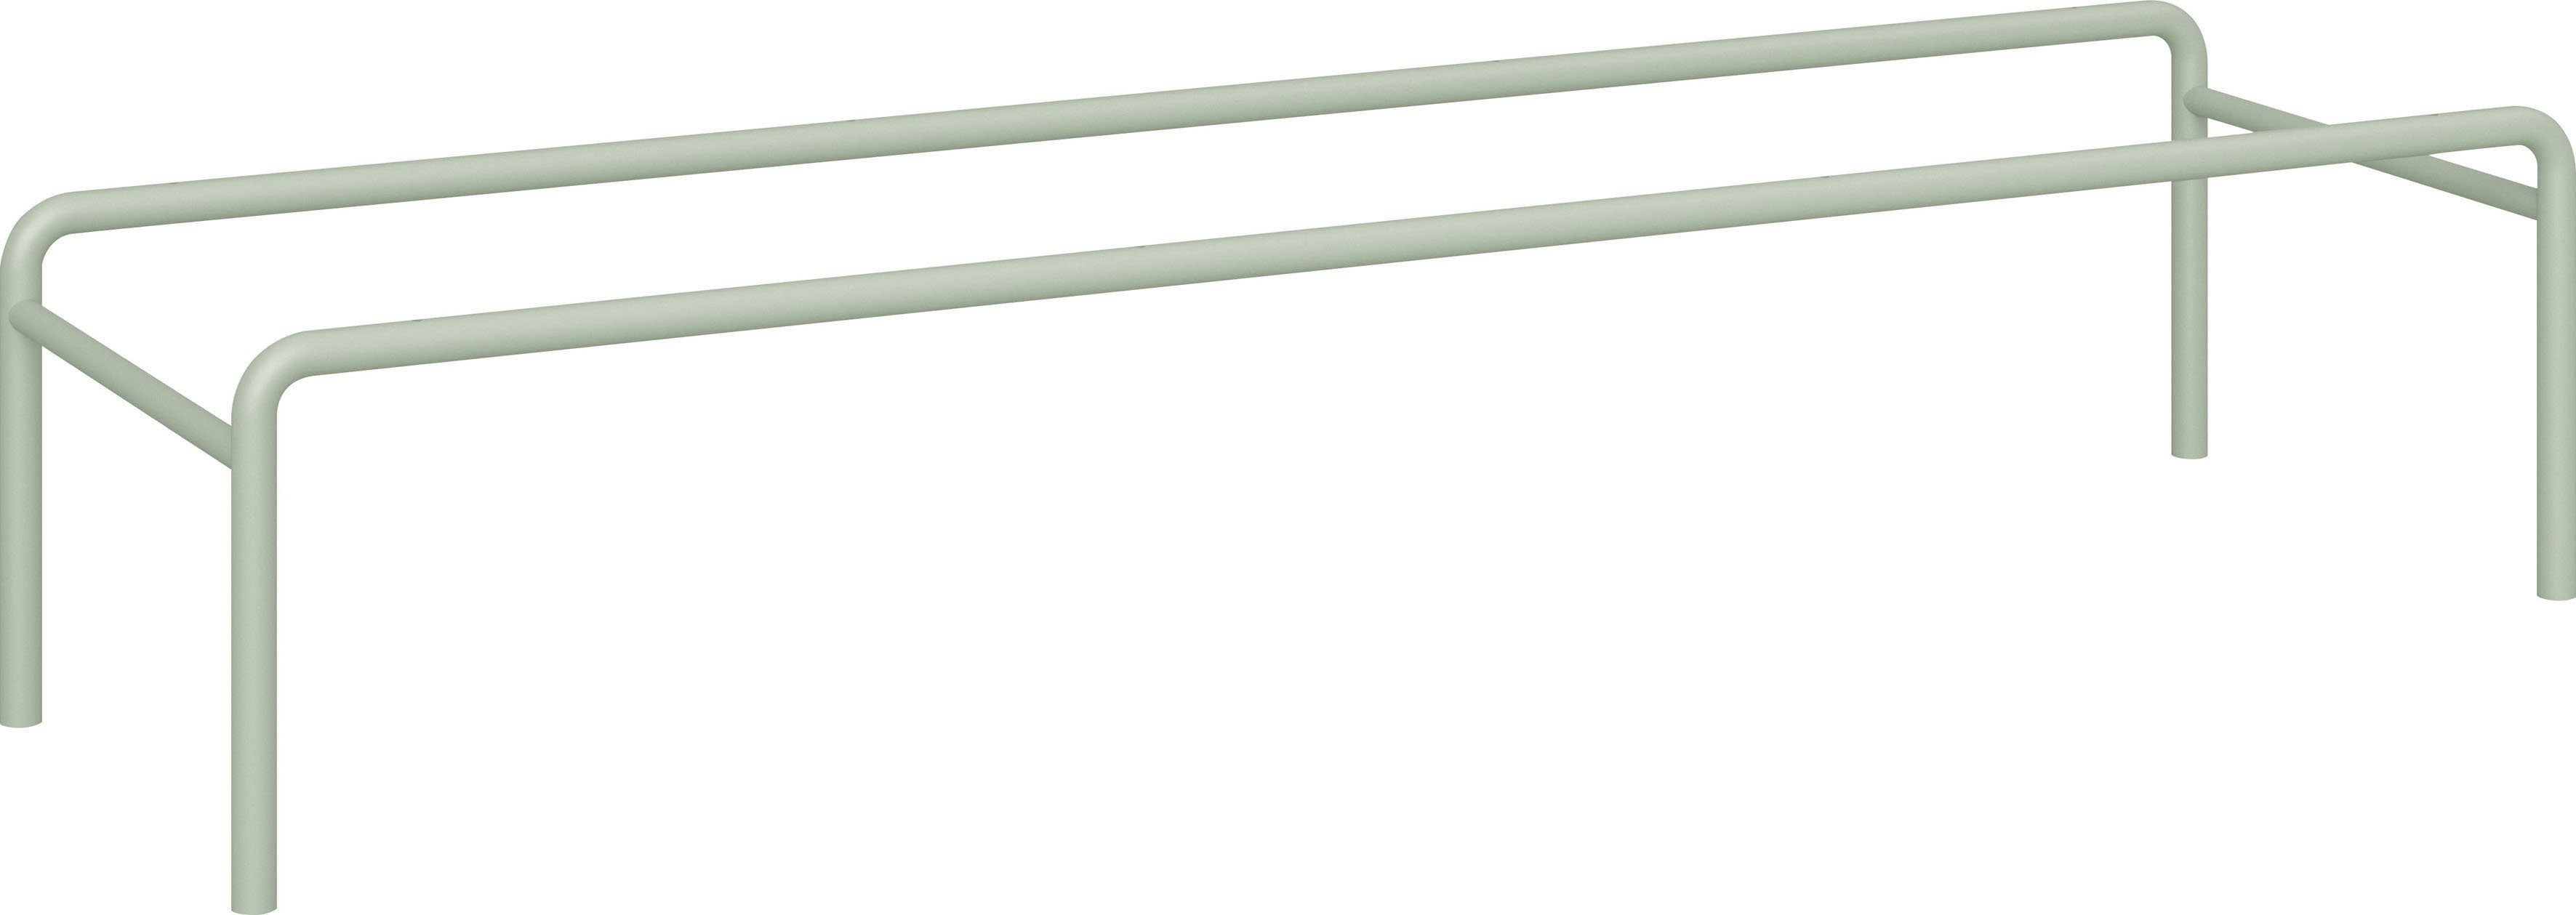 Keep cm. Hammel Modul: Hellgrün 133,8 101, Untergestell Möbelserie Hammel flexible Sockel, Furniture by Breite Metall für